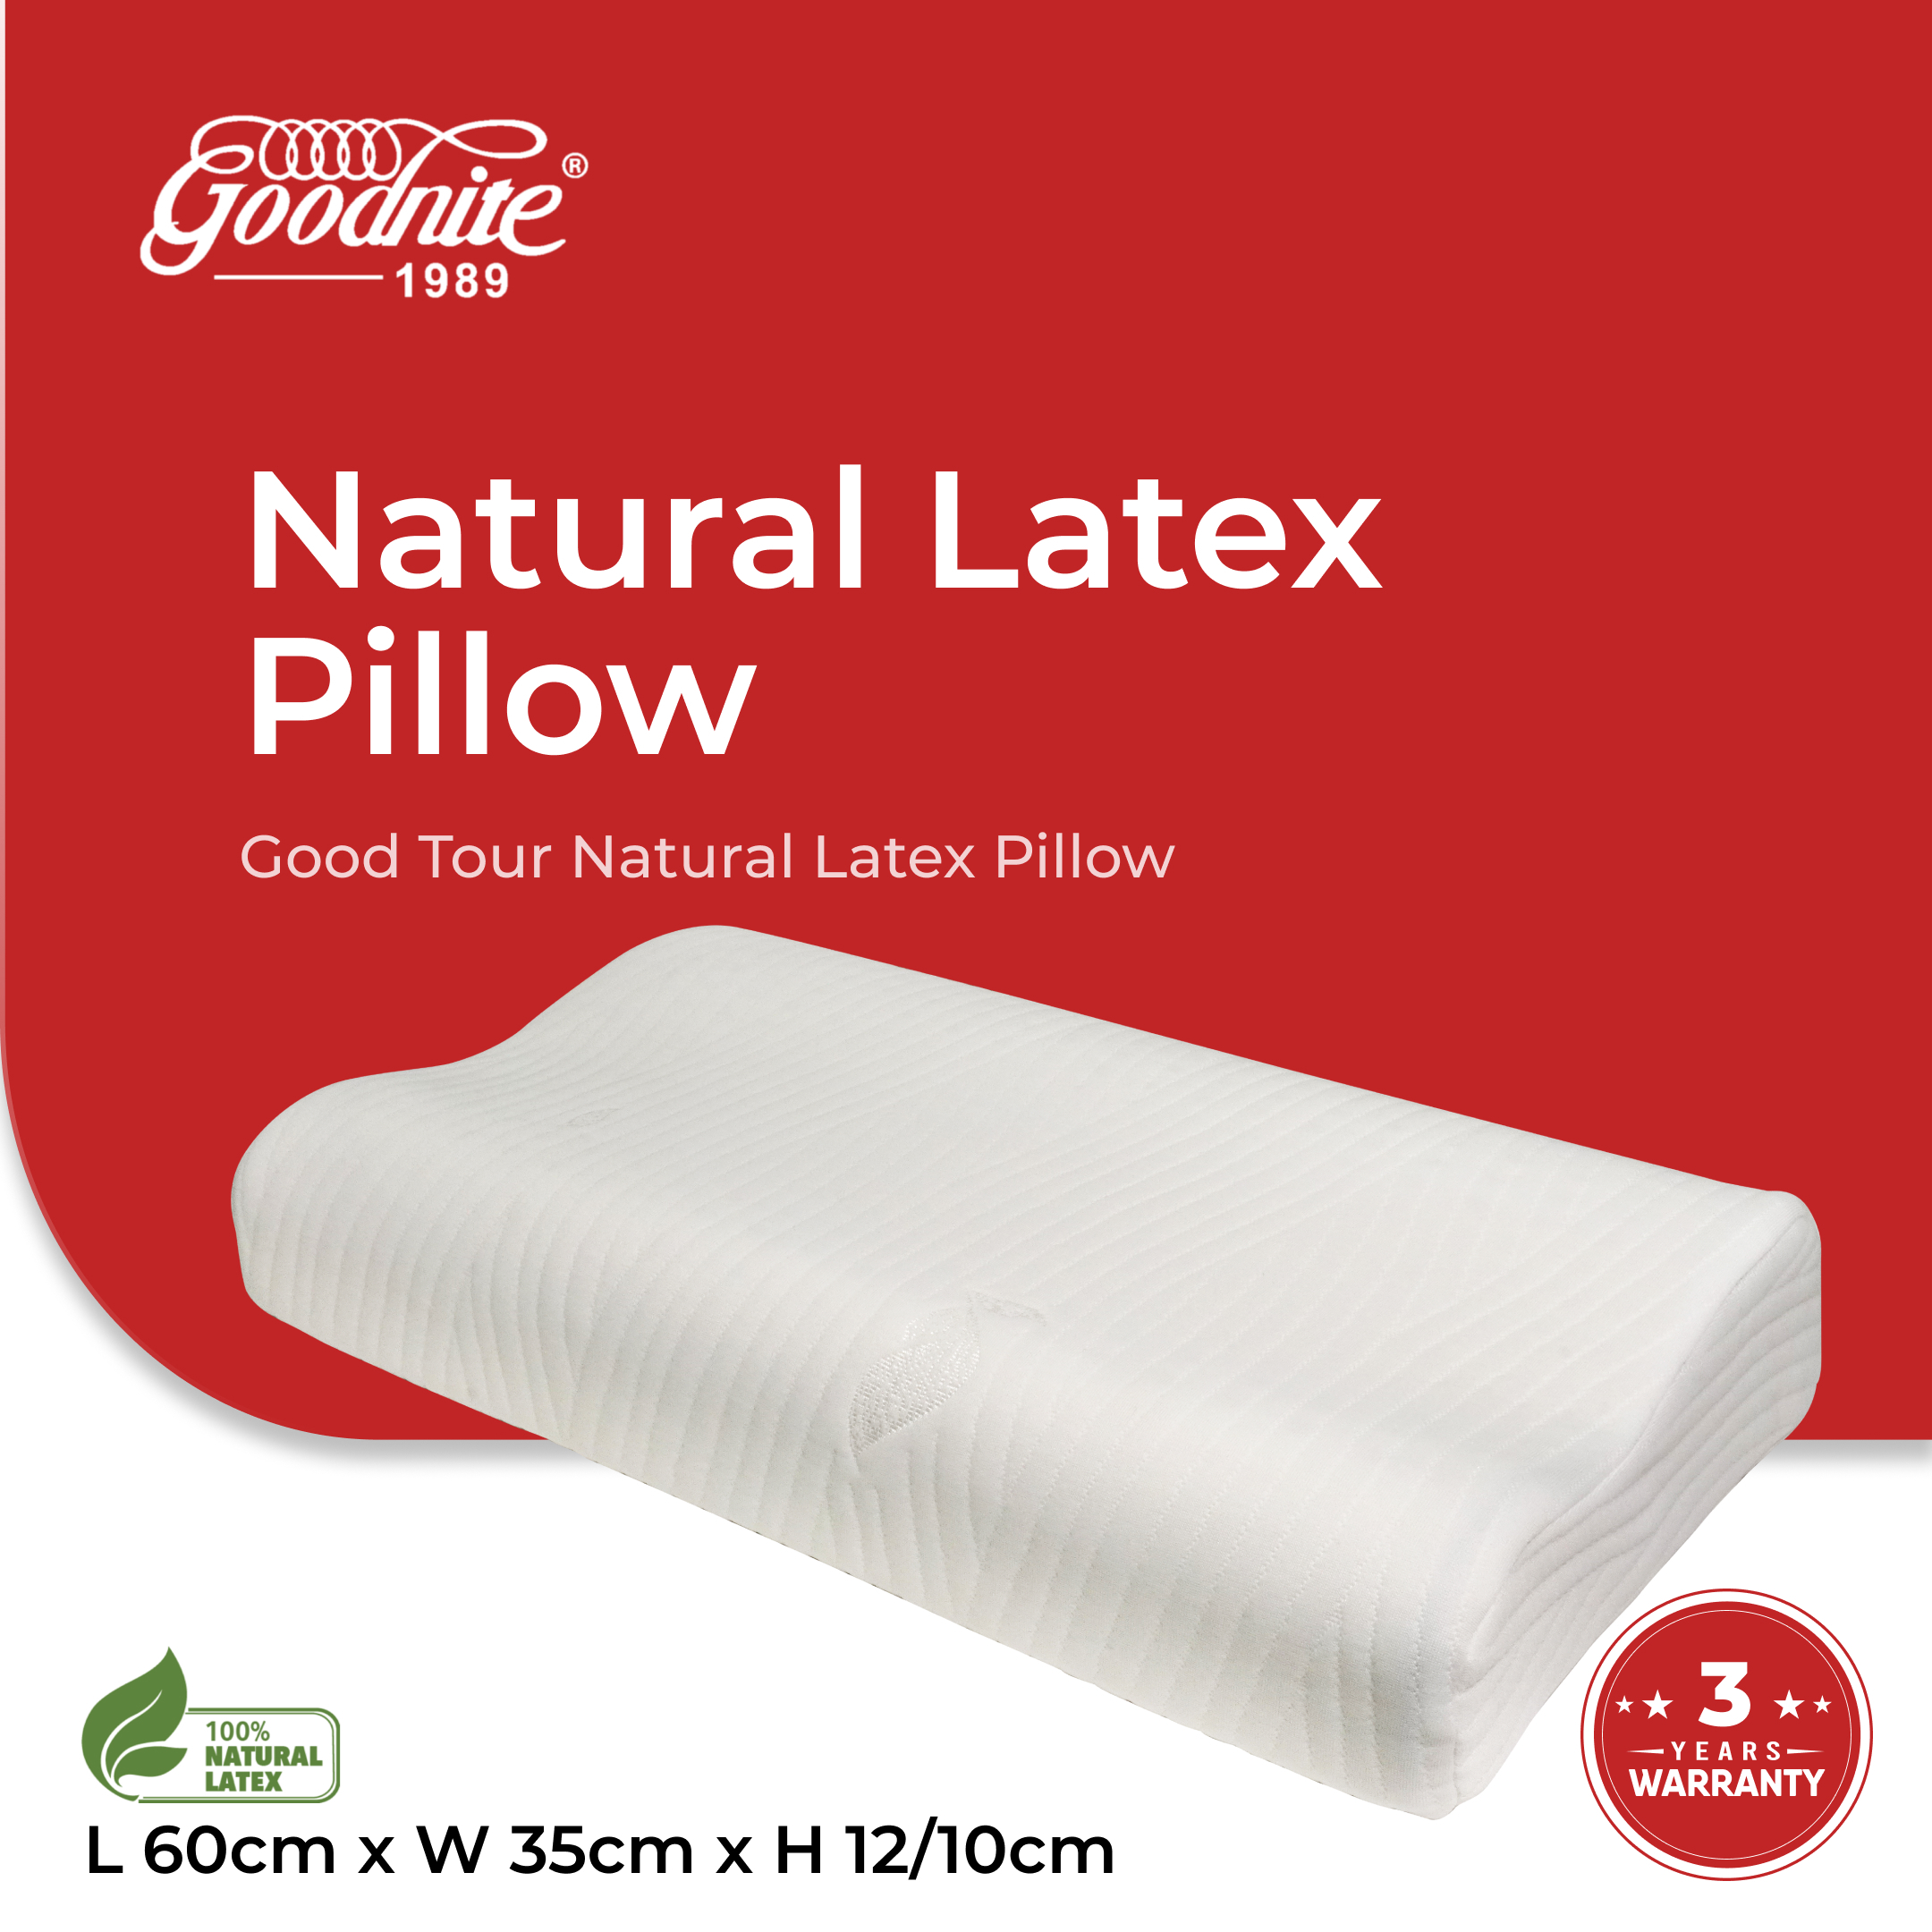 Good Tour Natural Latex Pillow M